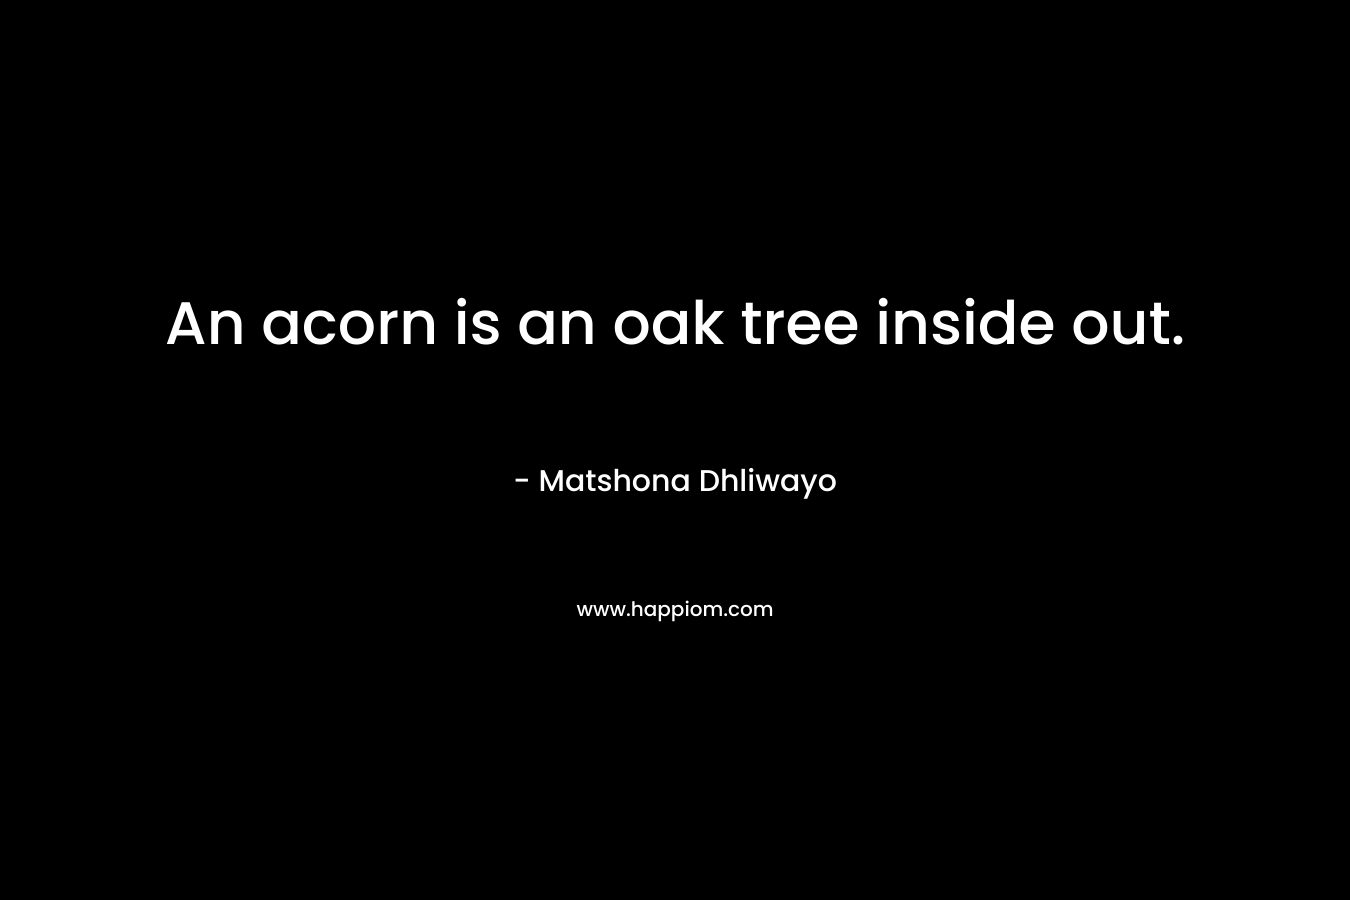 An acorn is an oak tree inside out.